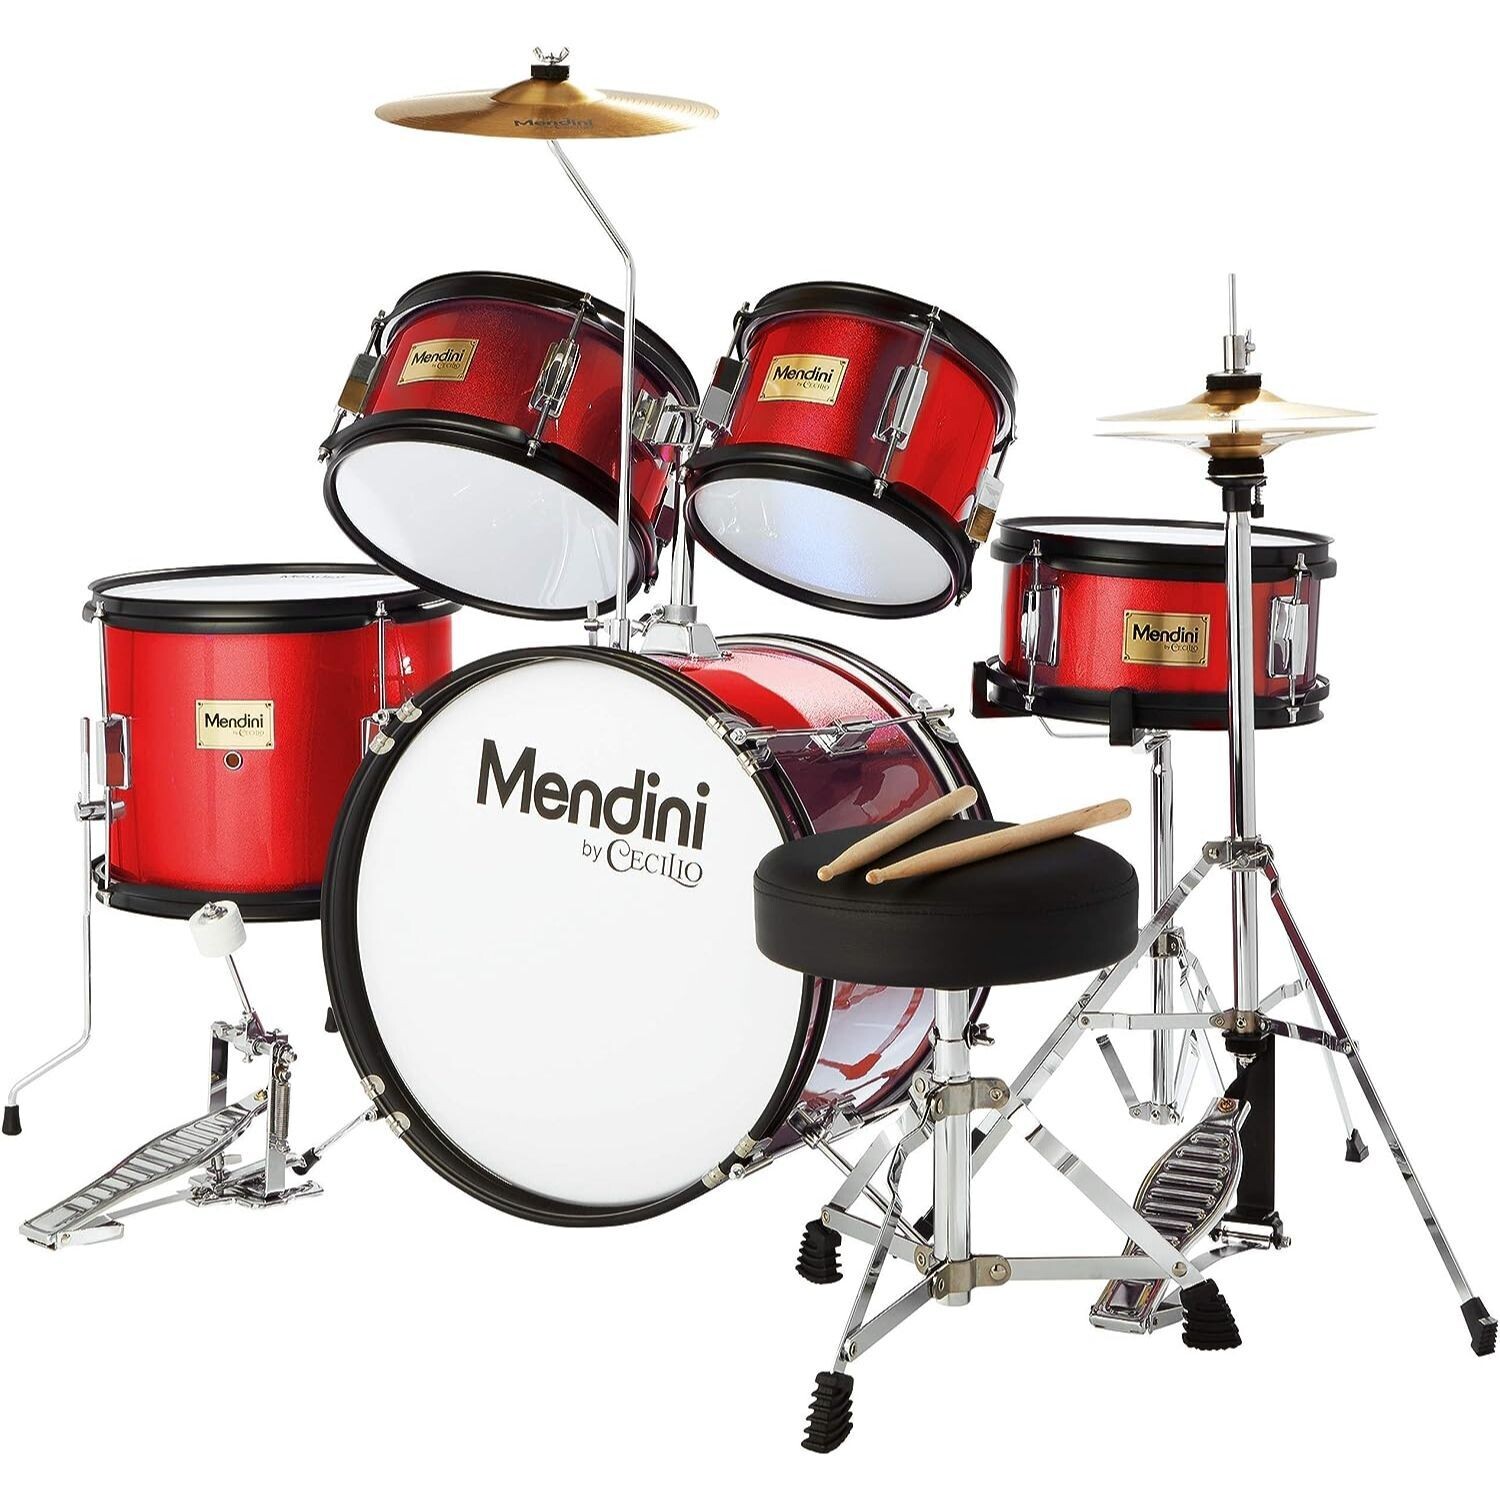 LW Essentials Basic 5-Piece Junior Kids Drum Set with Hardware - Red